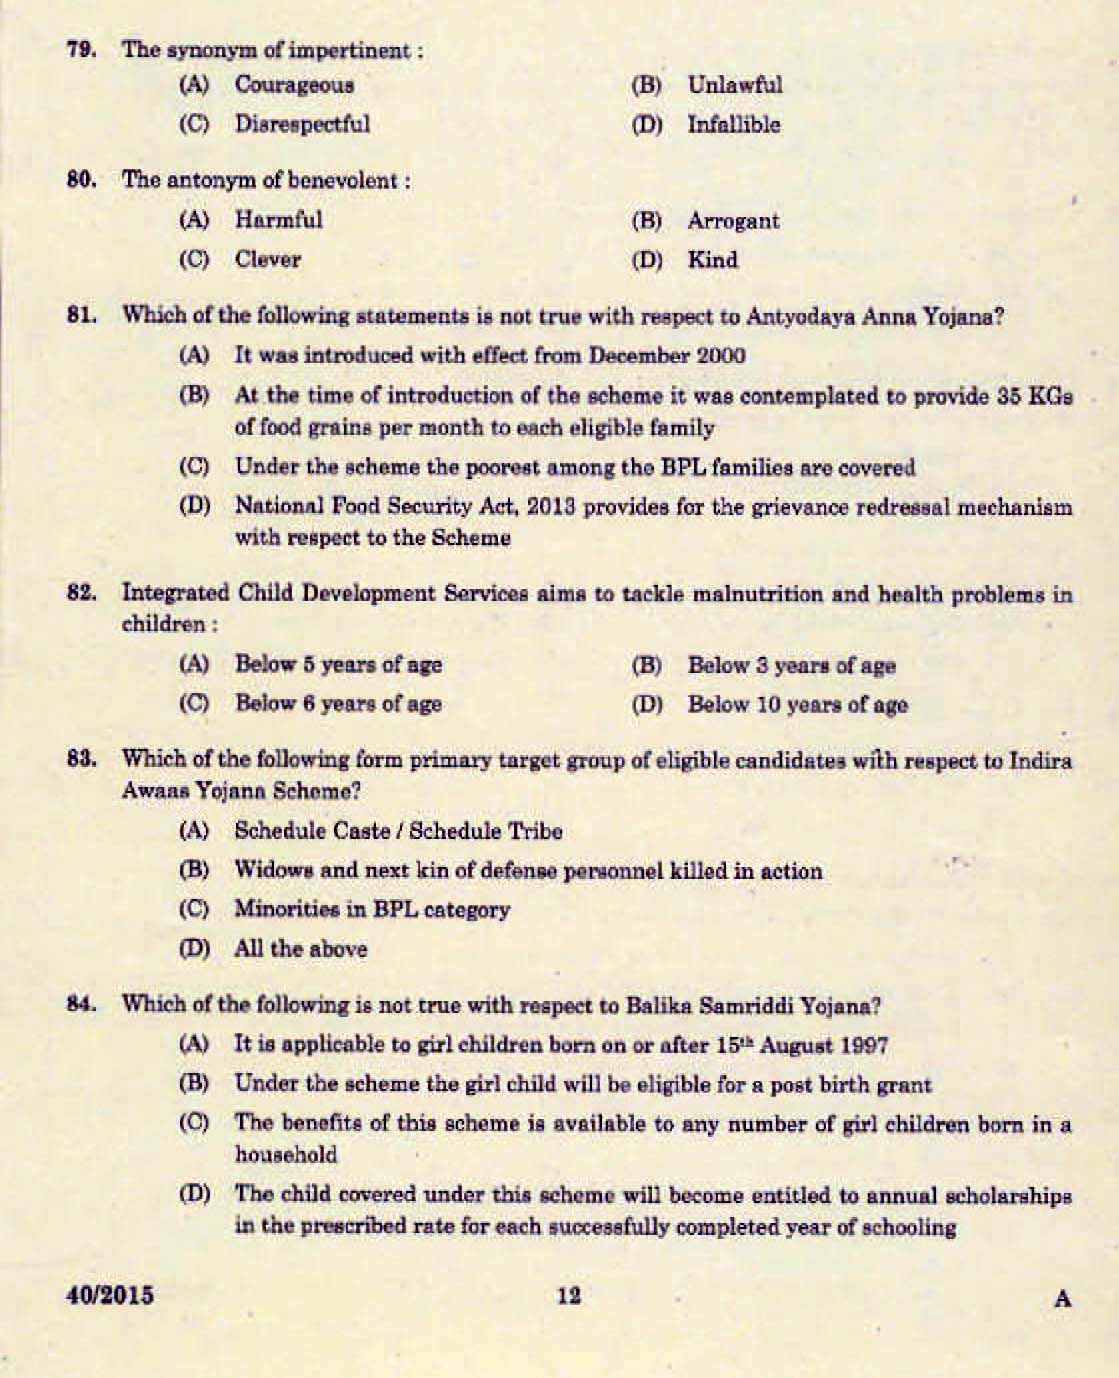 Kerala PSC Junior Assistant Exam 2015 Question Paper Code 402015 10